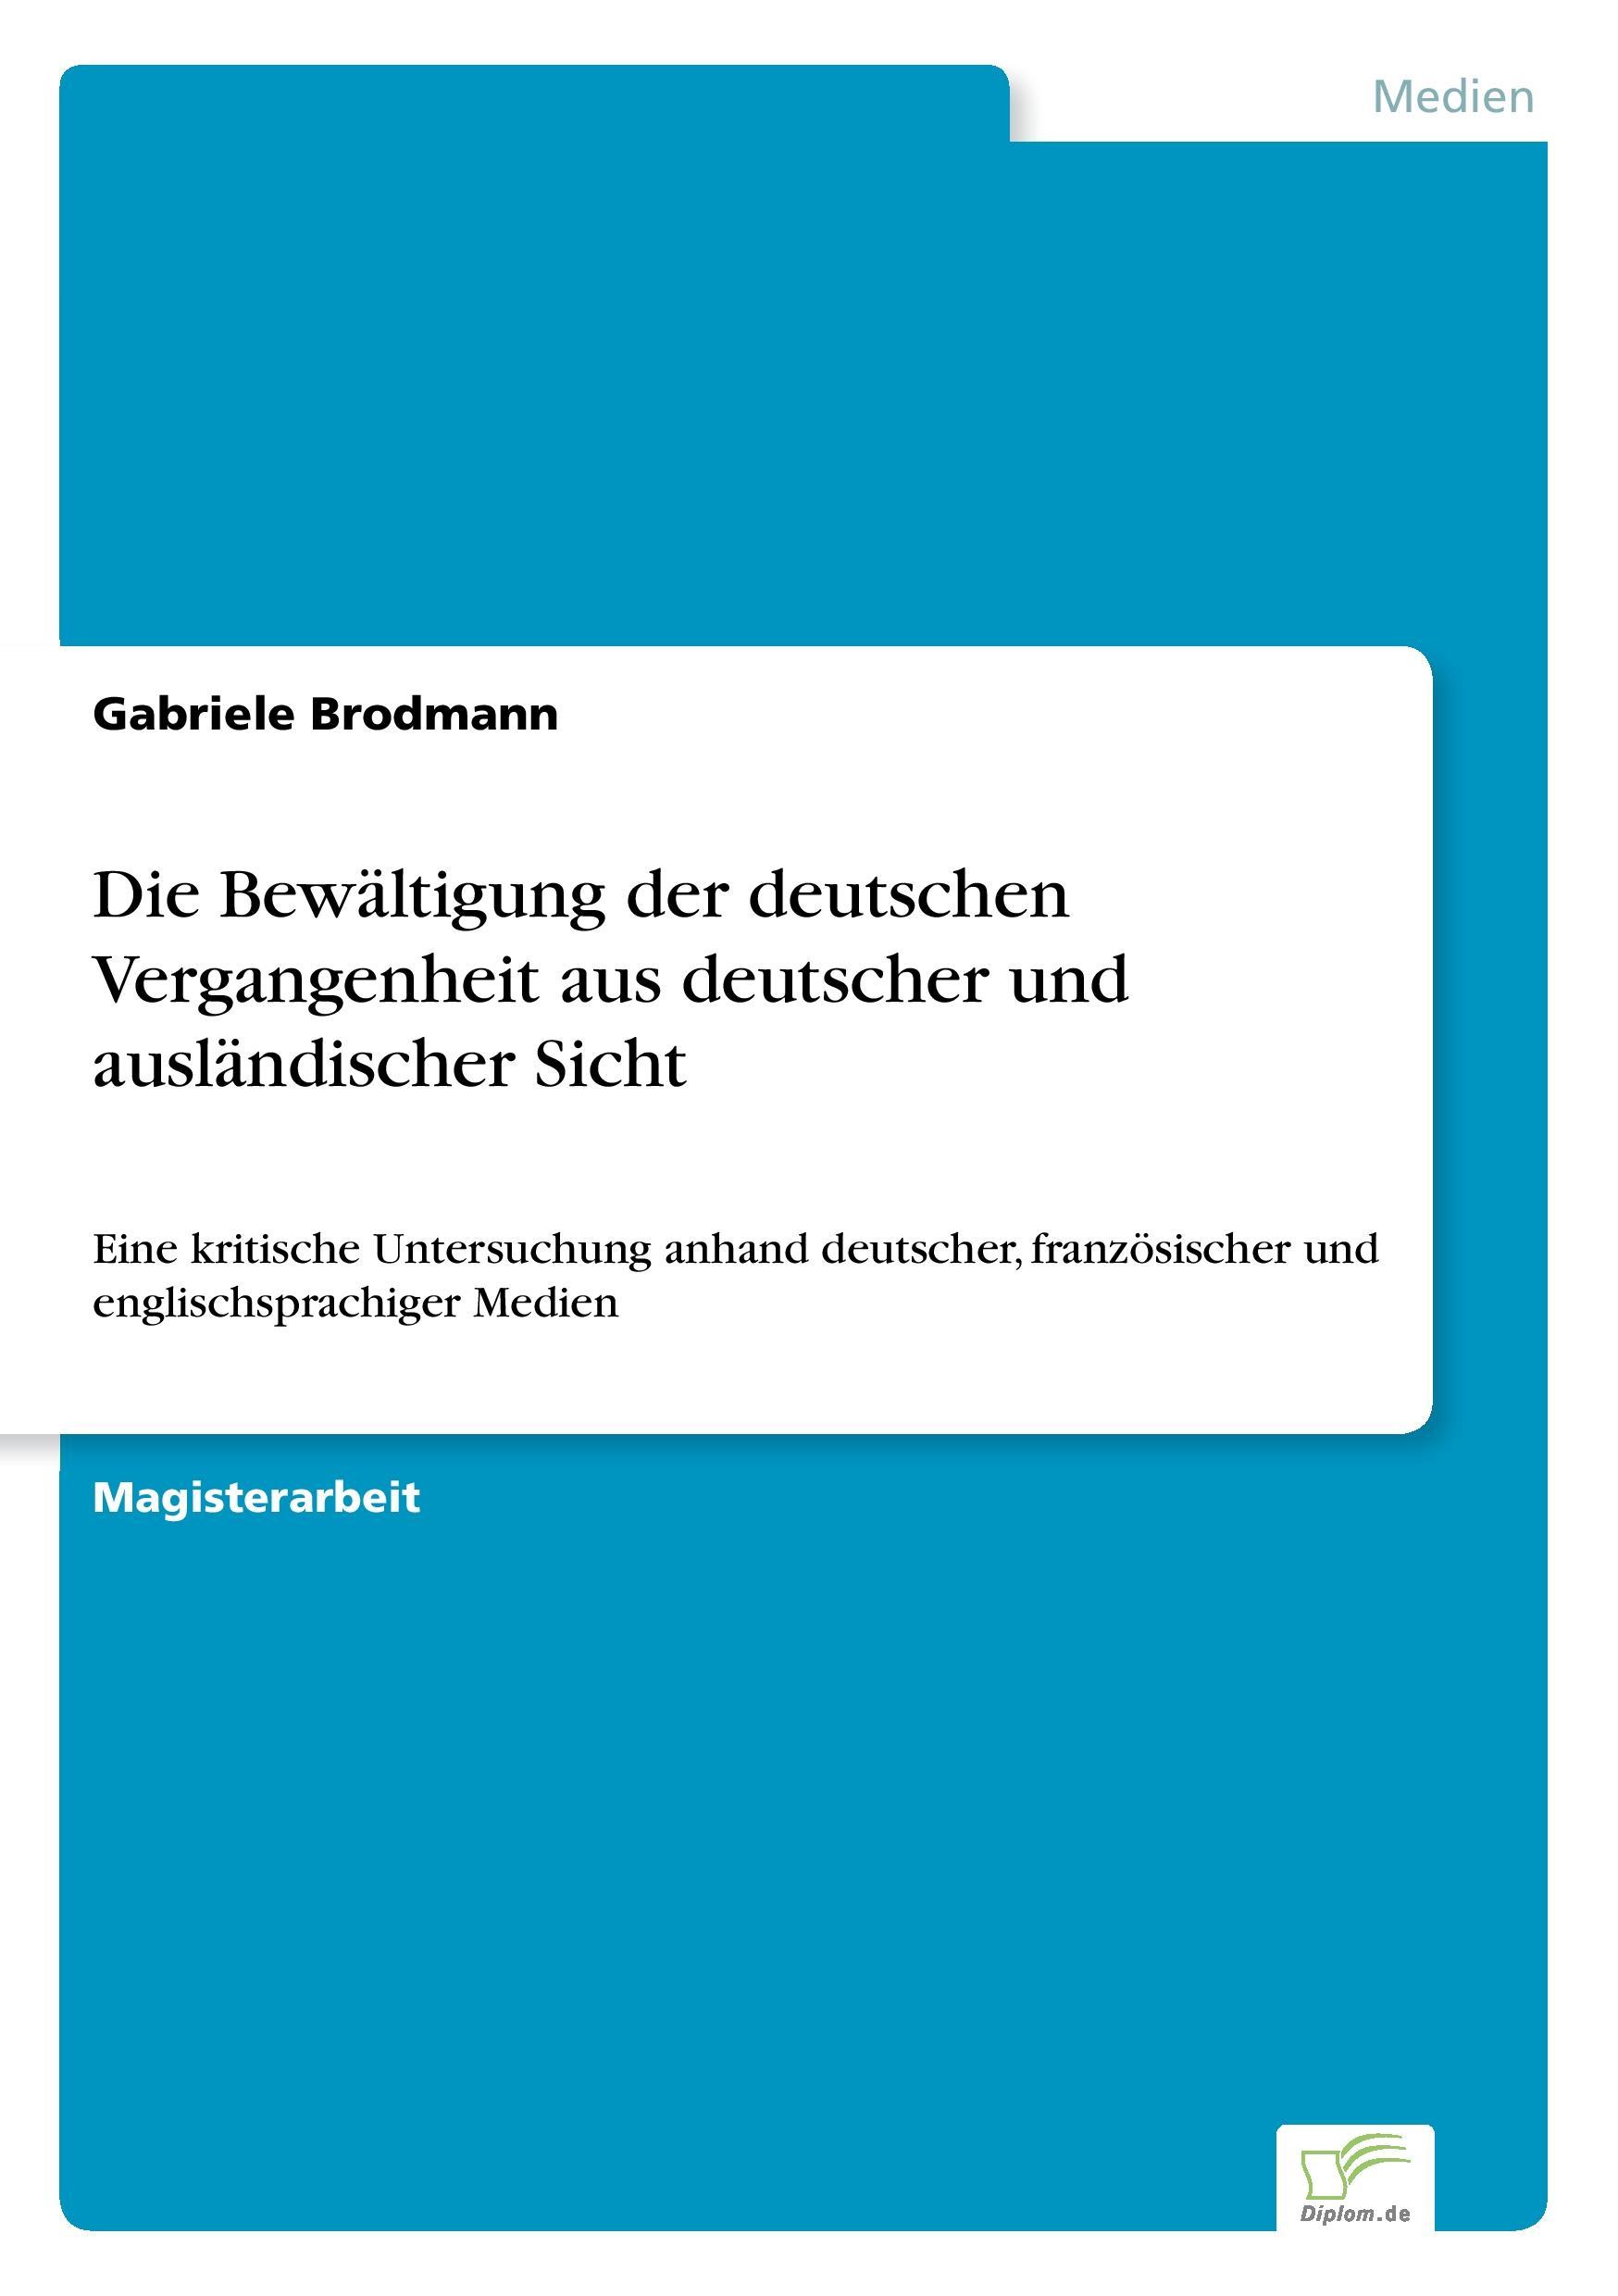 Die Bewaeltigung der deutschen Vergangenheit aus deutscher und auslaendischer Sicht - Brodmann, Gabriele